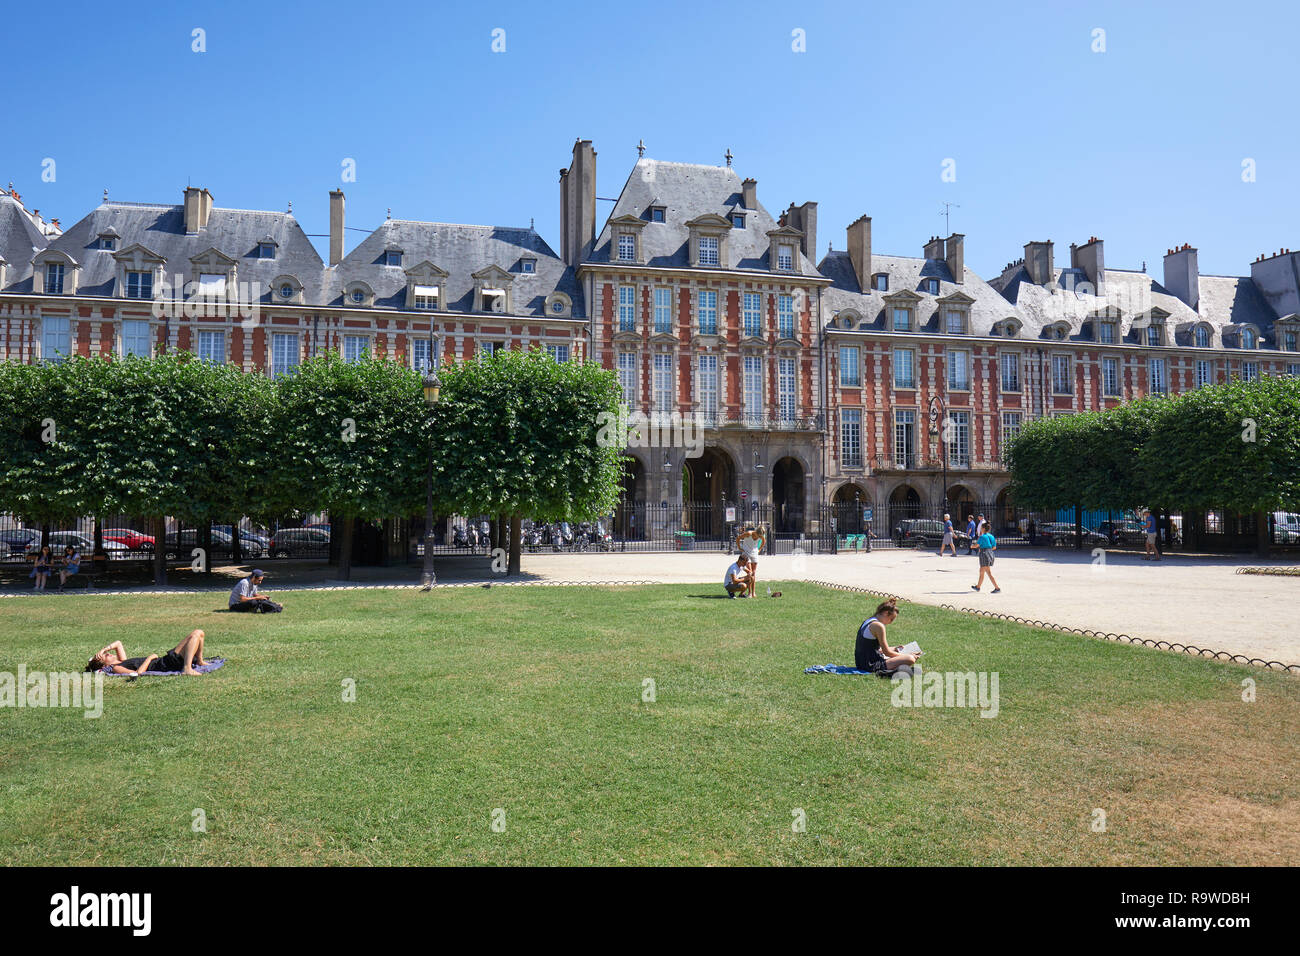 PARIS, FRANCE - Le 6 juillet 2018 : Place des Vosges d'anciens bâtiments et des gens sur l'herbe dans un beau jour d'été, ciel bleu clair à Paris Banque D'Images